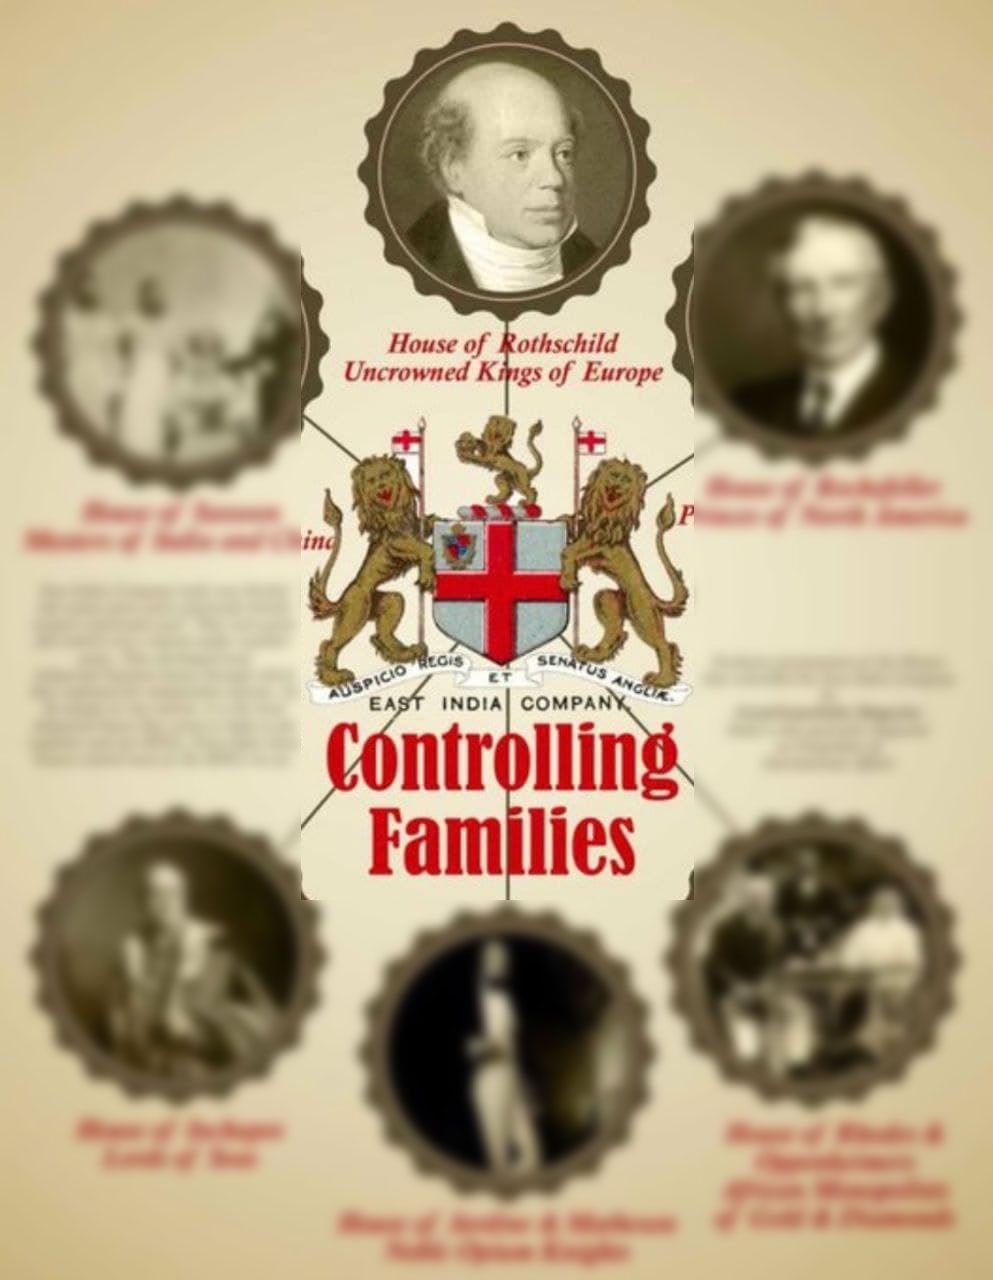 Un mème montrant les "familles de contrôle" de la Compagnie des Indes orientales. Il se réfère à la maison Rothschild comme les «rois sans couronne d'Europe».